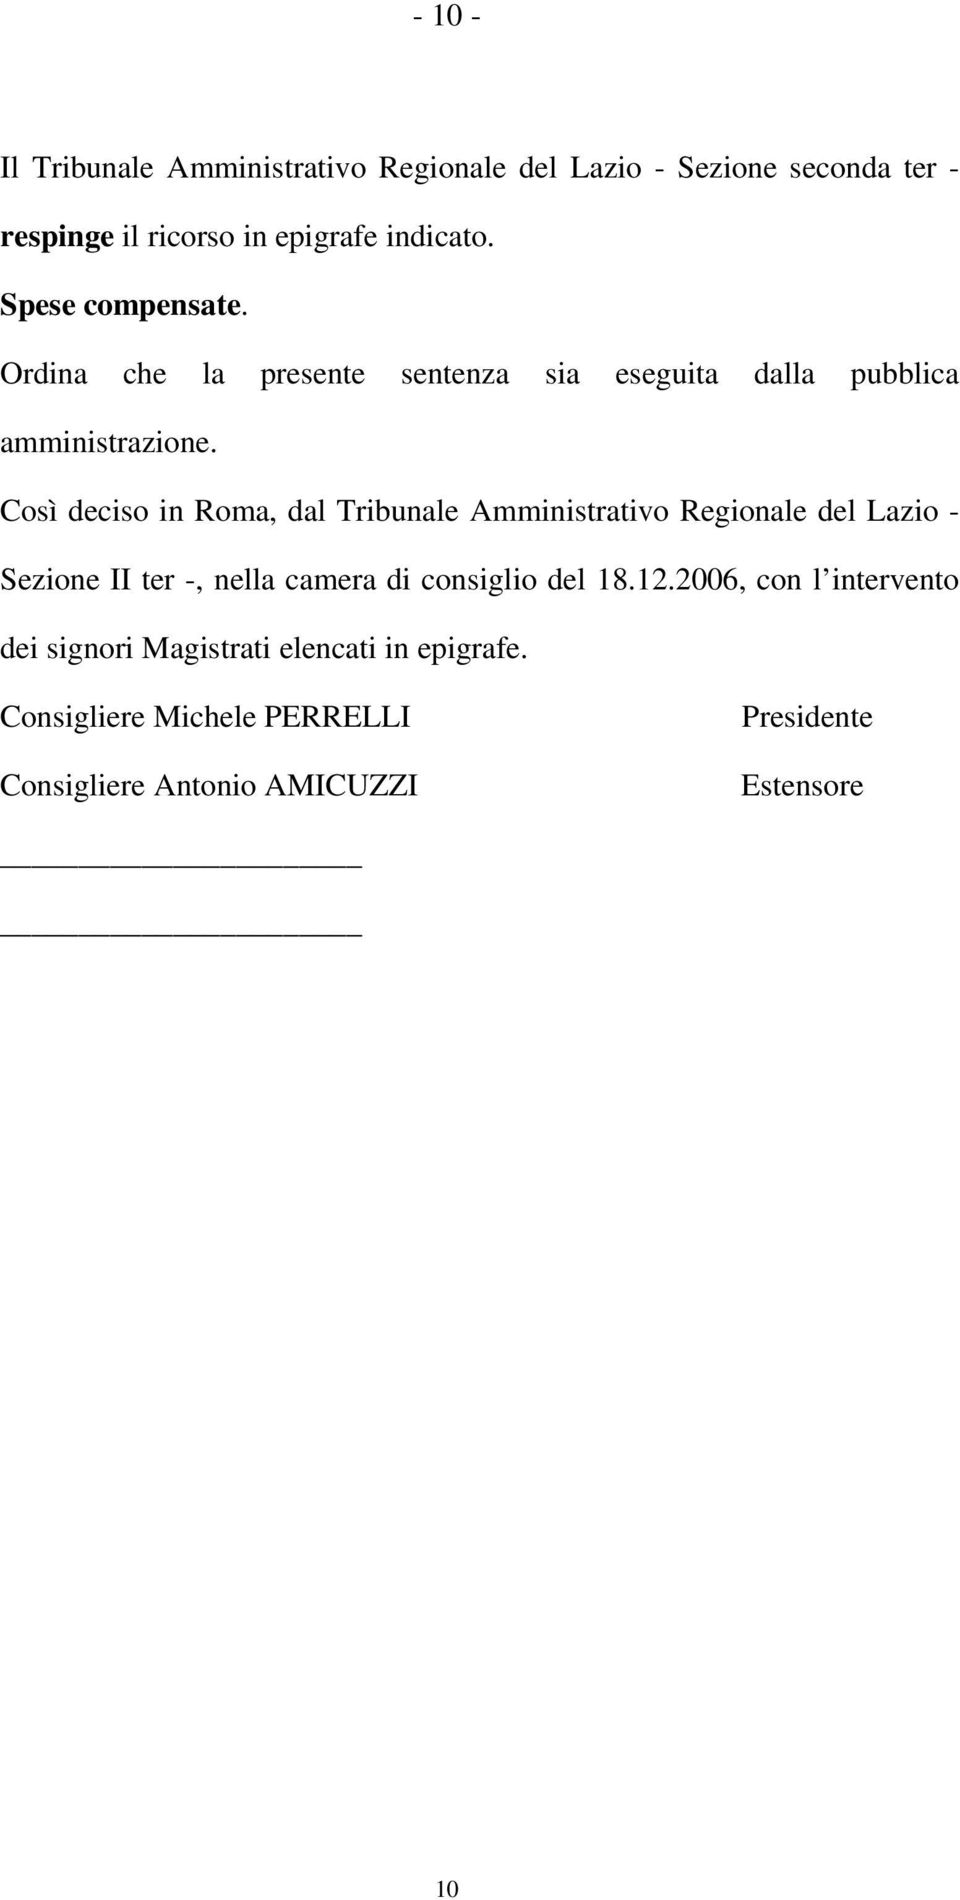 Così deciso in Roma, dal Tribunale Amministrativo Regionale del Lazio - Sezione II ter -, nella camera di consiglio del 18.